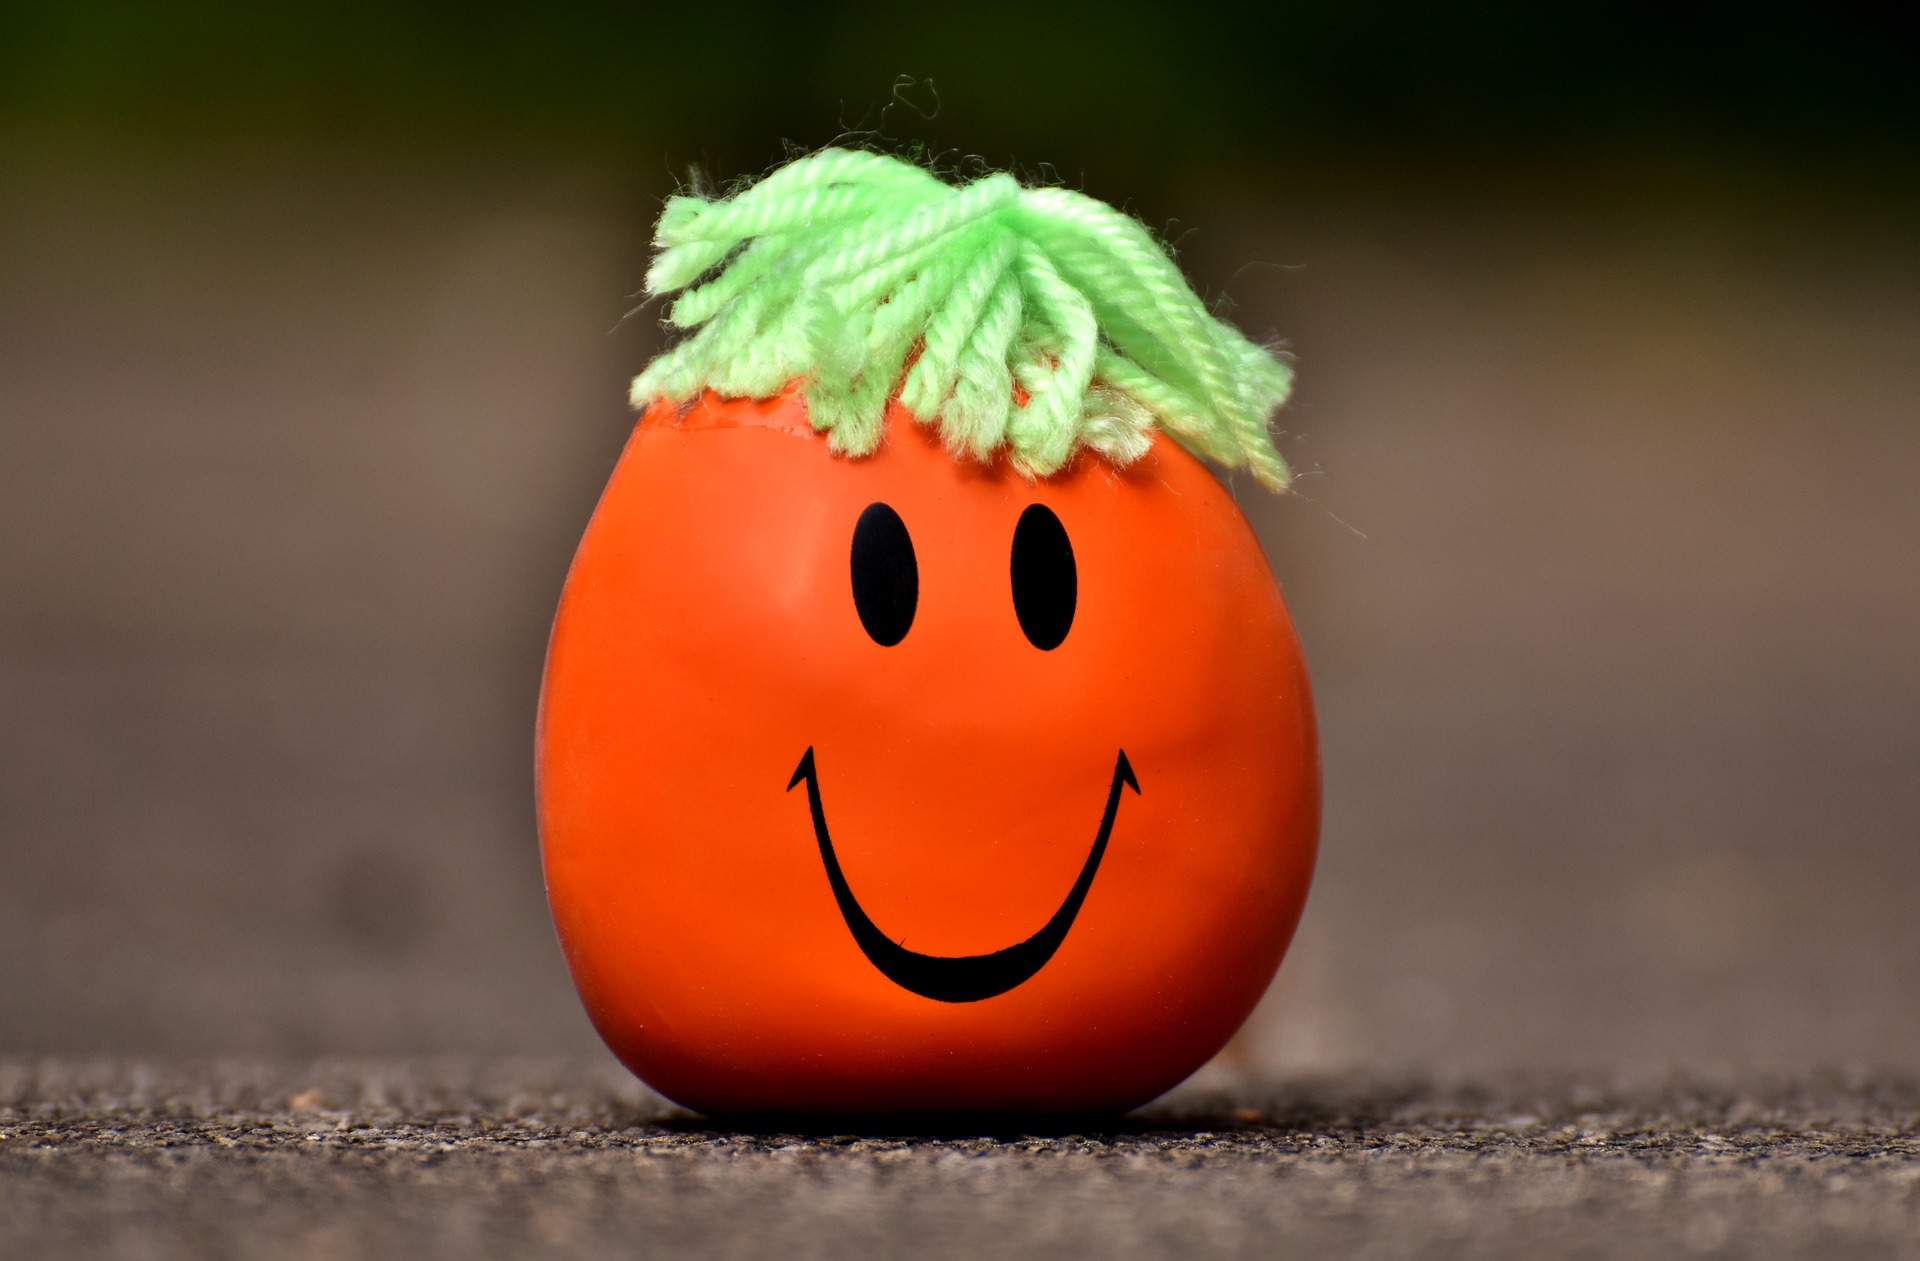 Balle anti-stress smiley orange avec des cheveux en laine